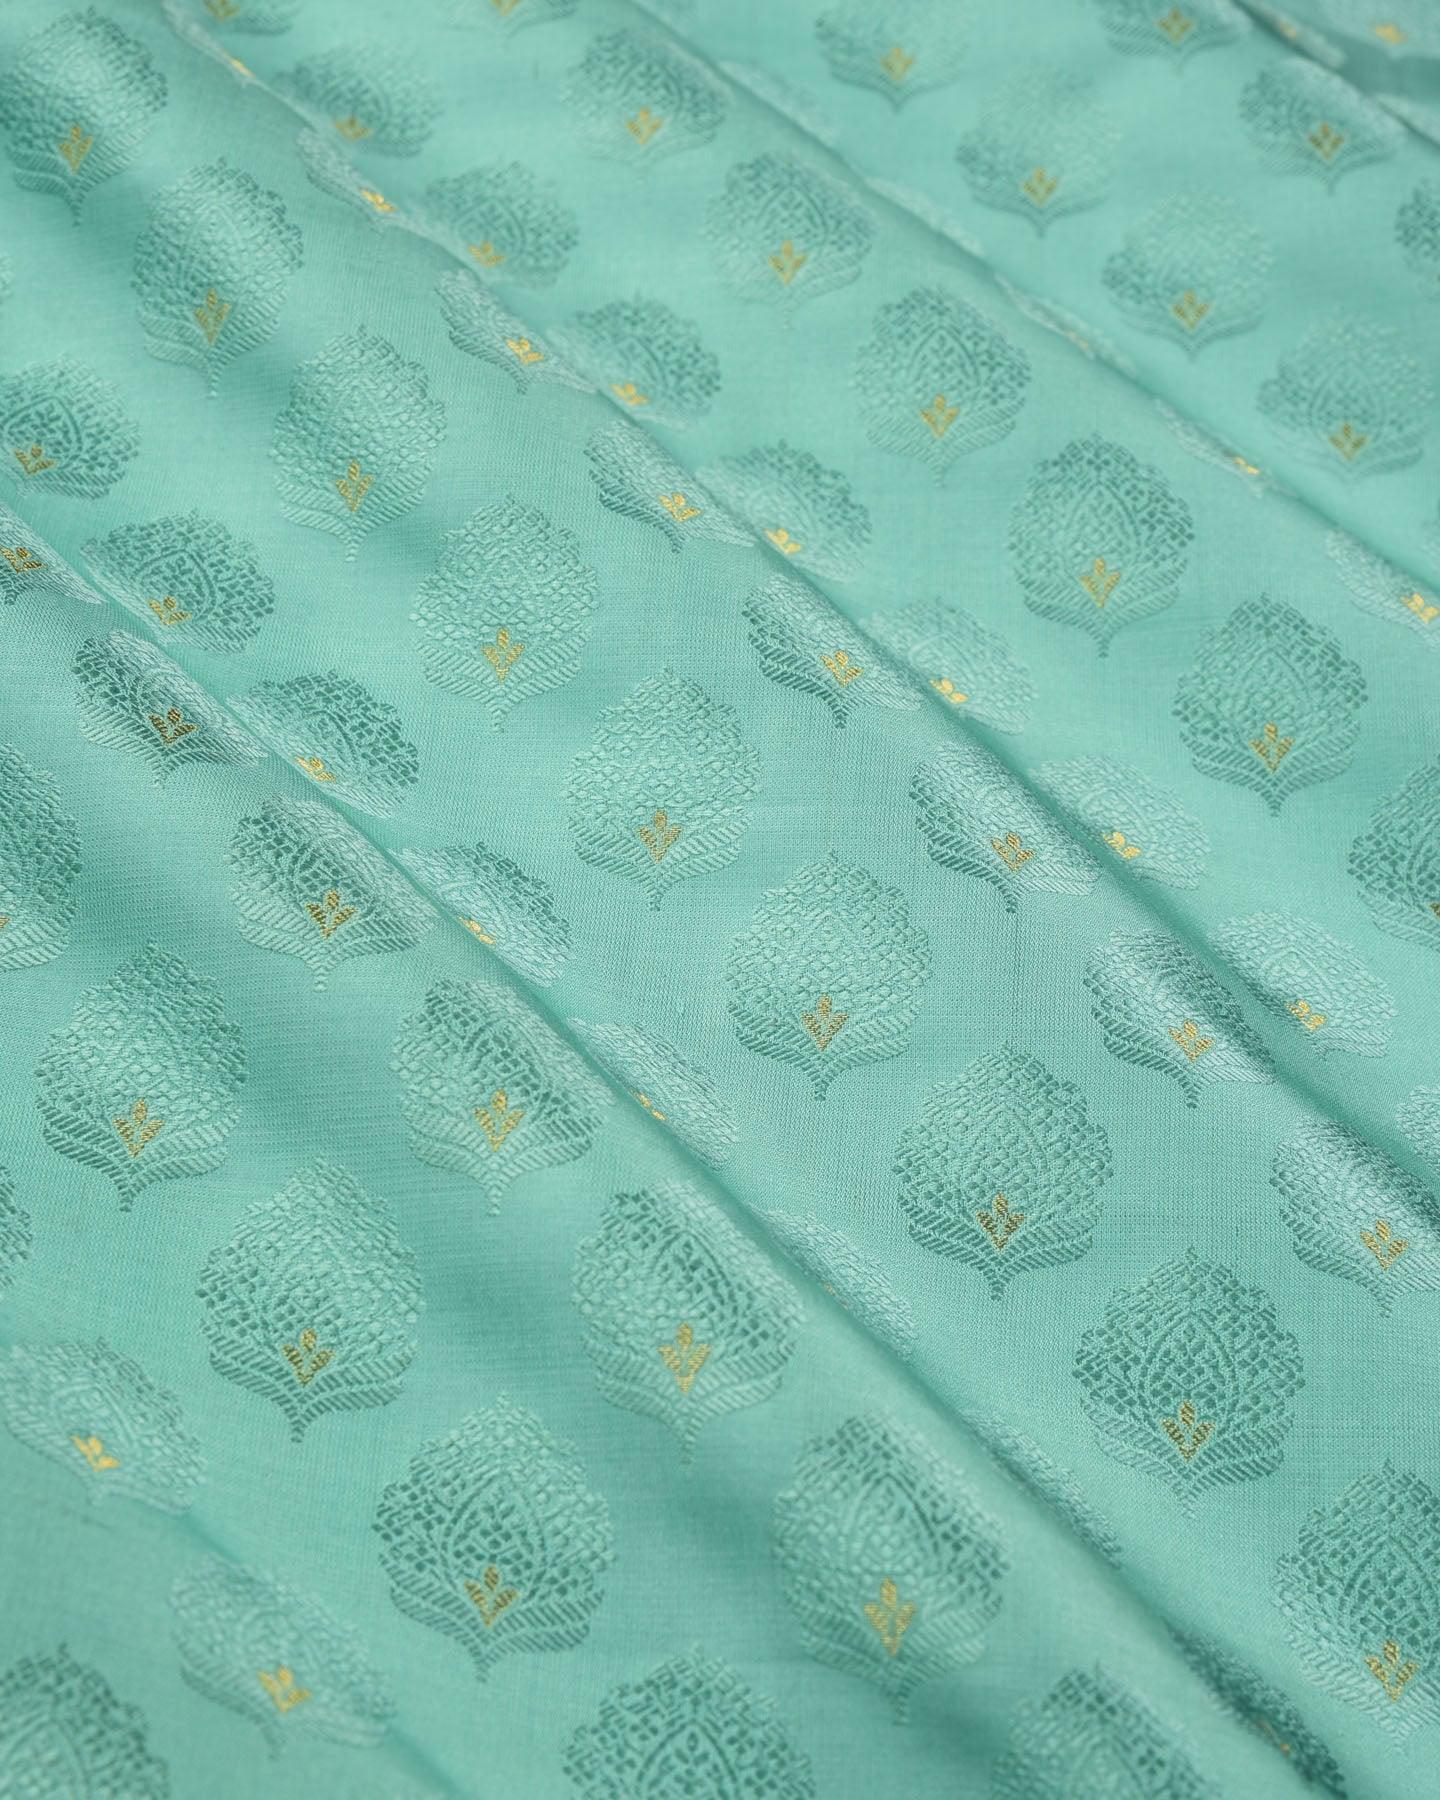 Turquoise Blue Banarasi Tanchoi Brocade Handwoven Katan Silk Fabric - By HolyWeaves, Benares